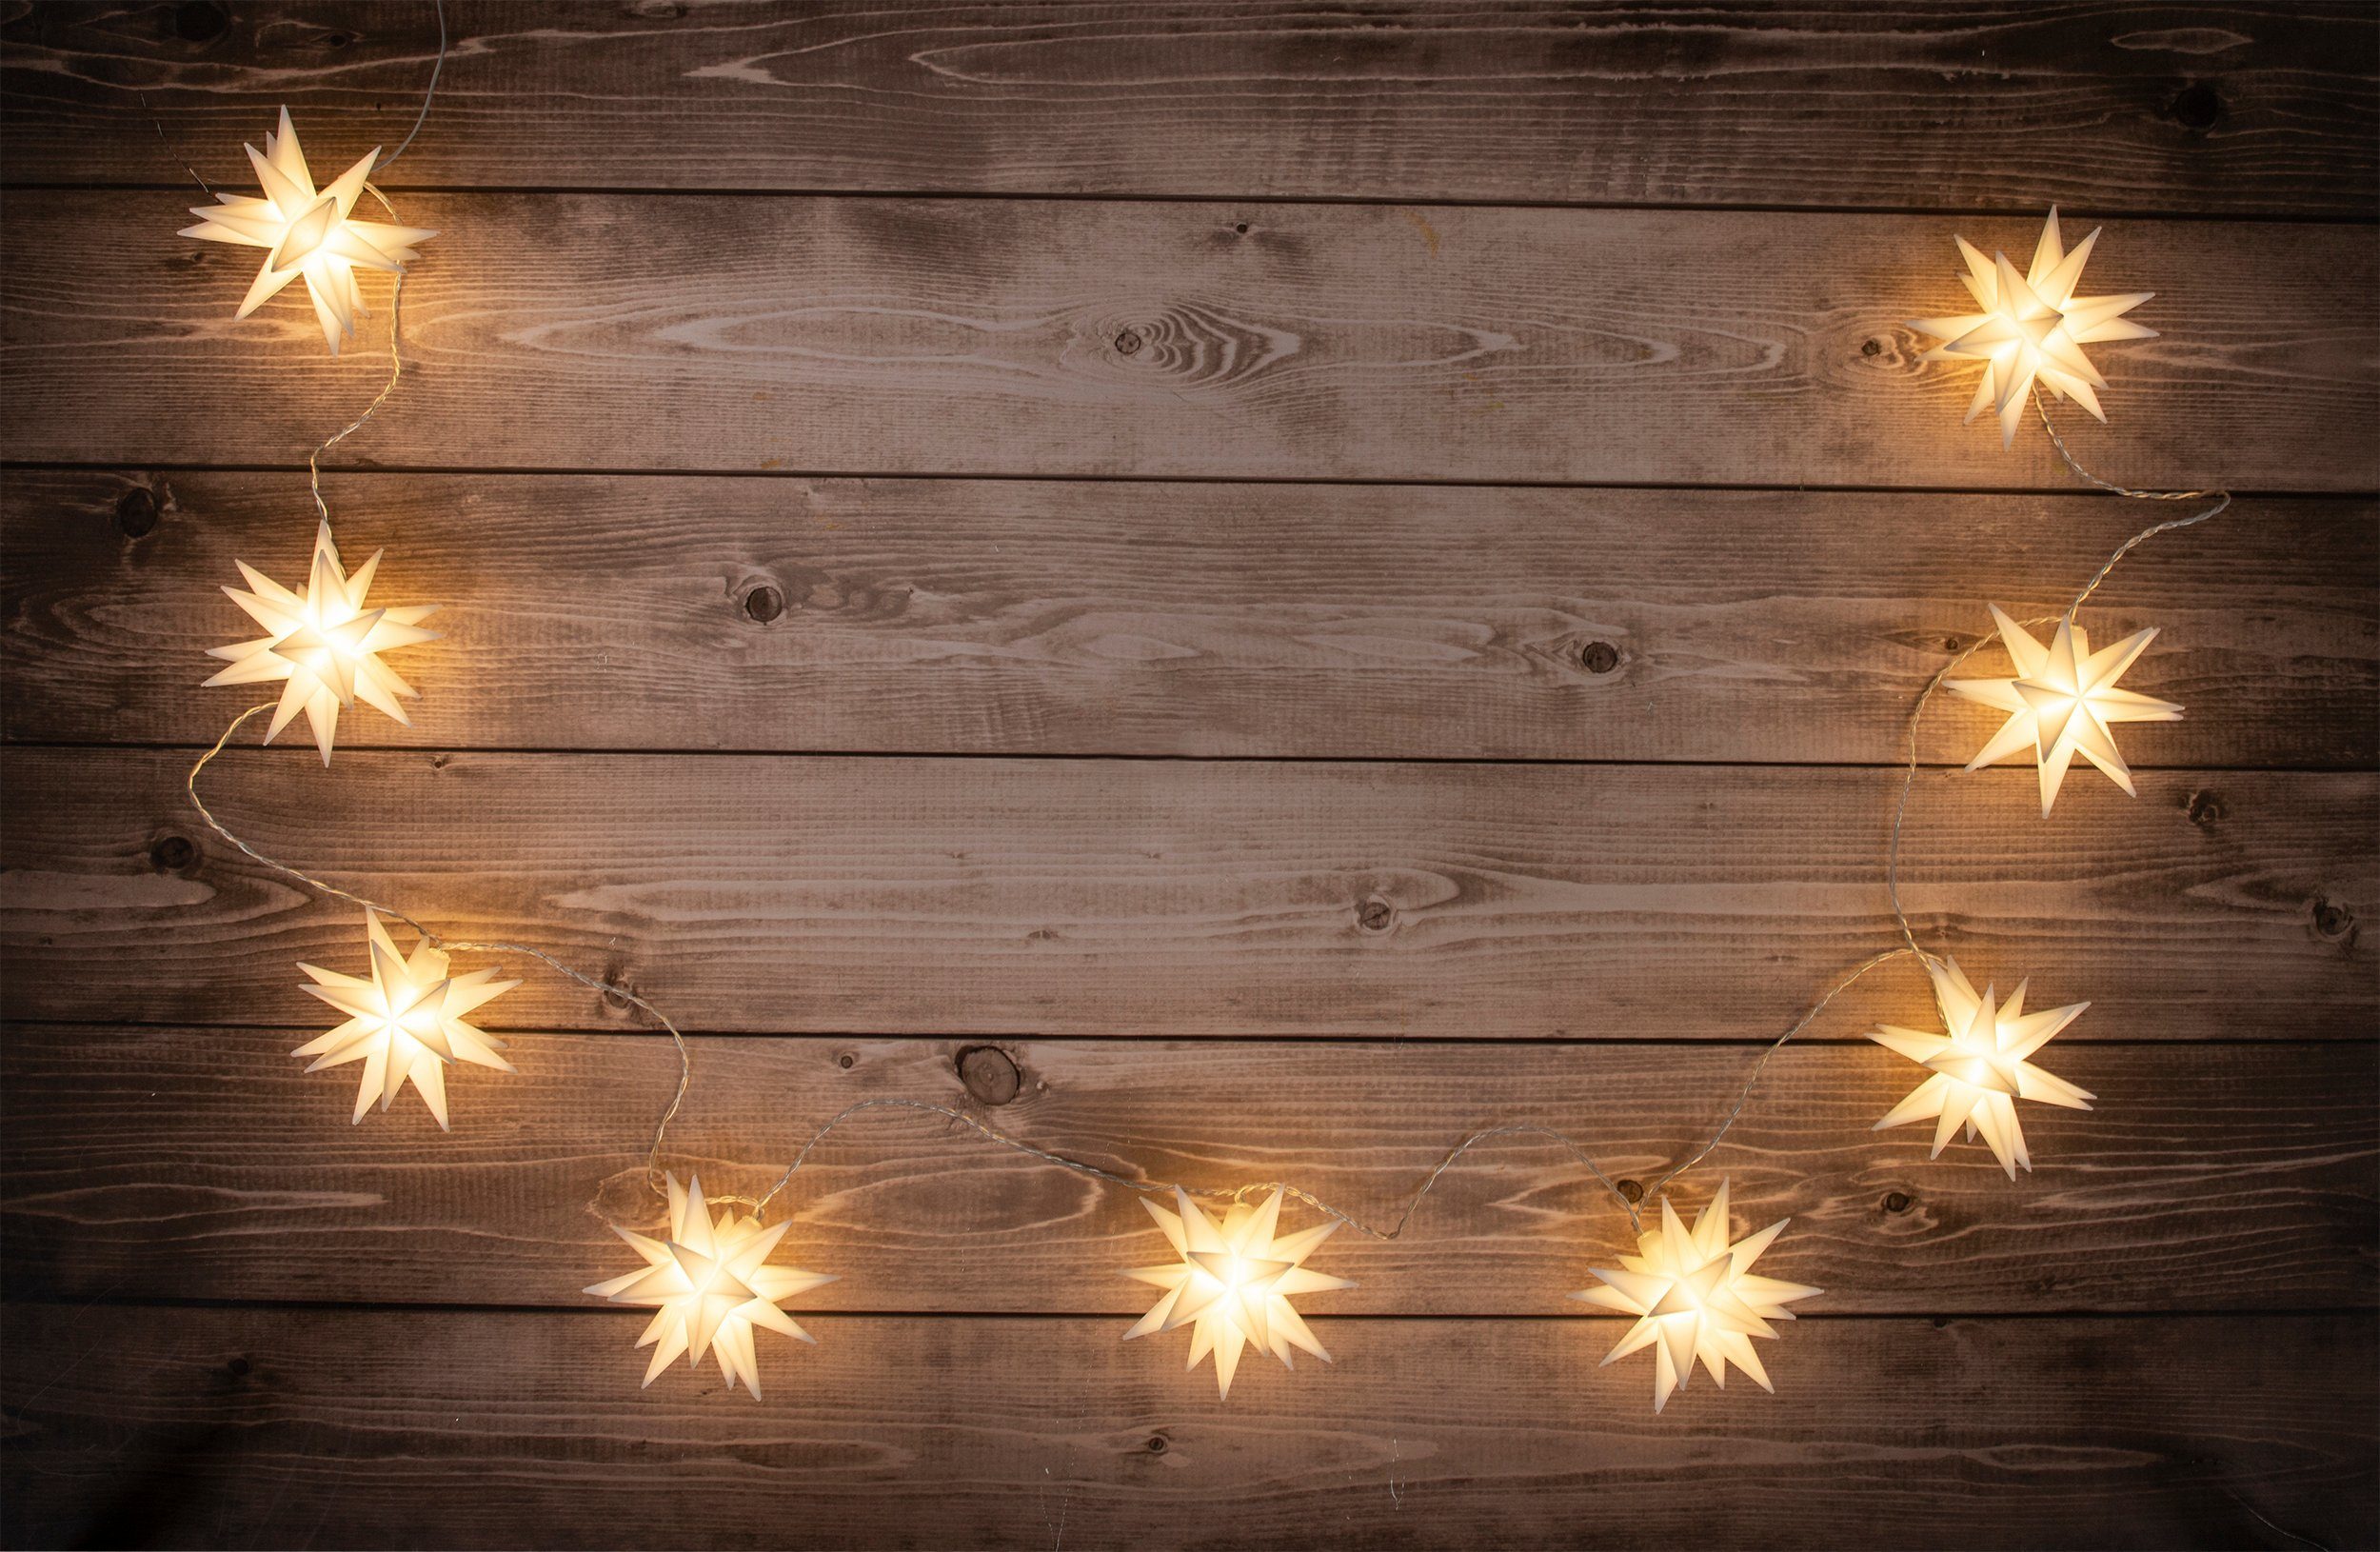 LED-Lichterkette LED-Weihnachtslichterkette 3D-Stern näve aussen, 3D-Sterne,Weihnachtsdeko weiß